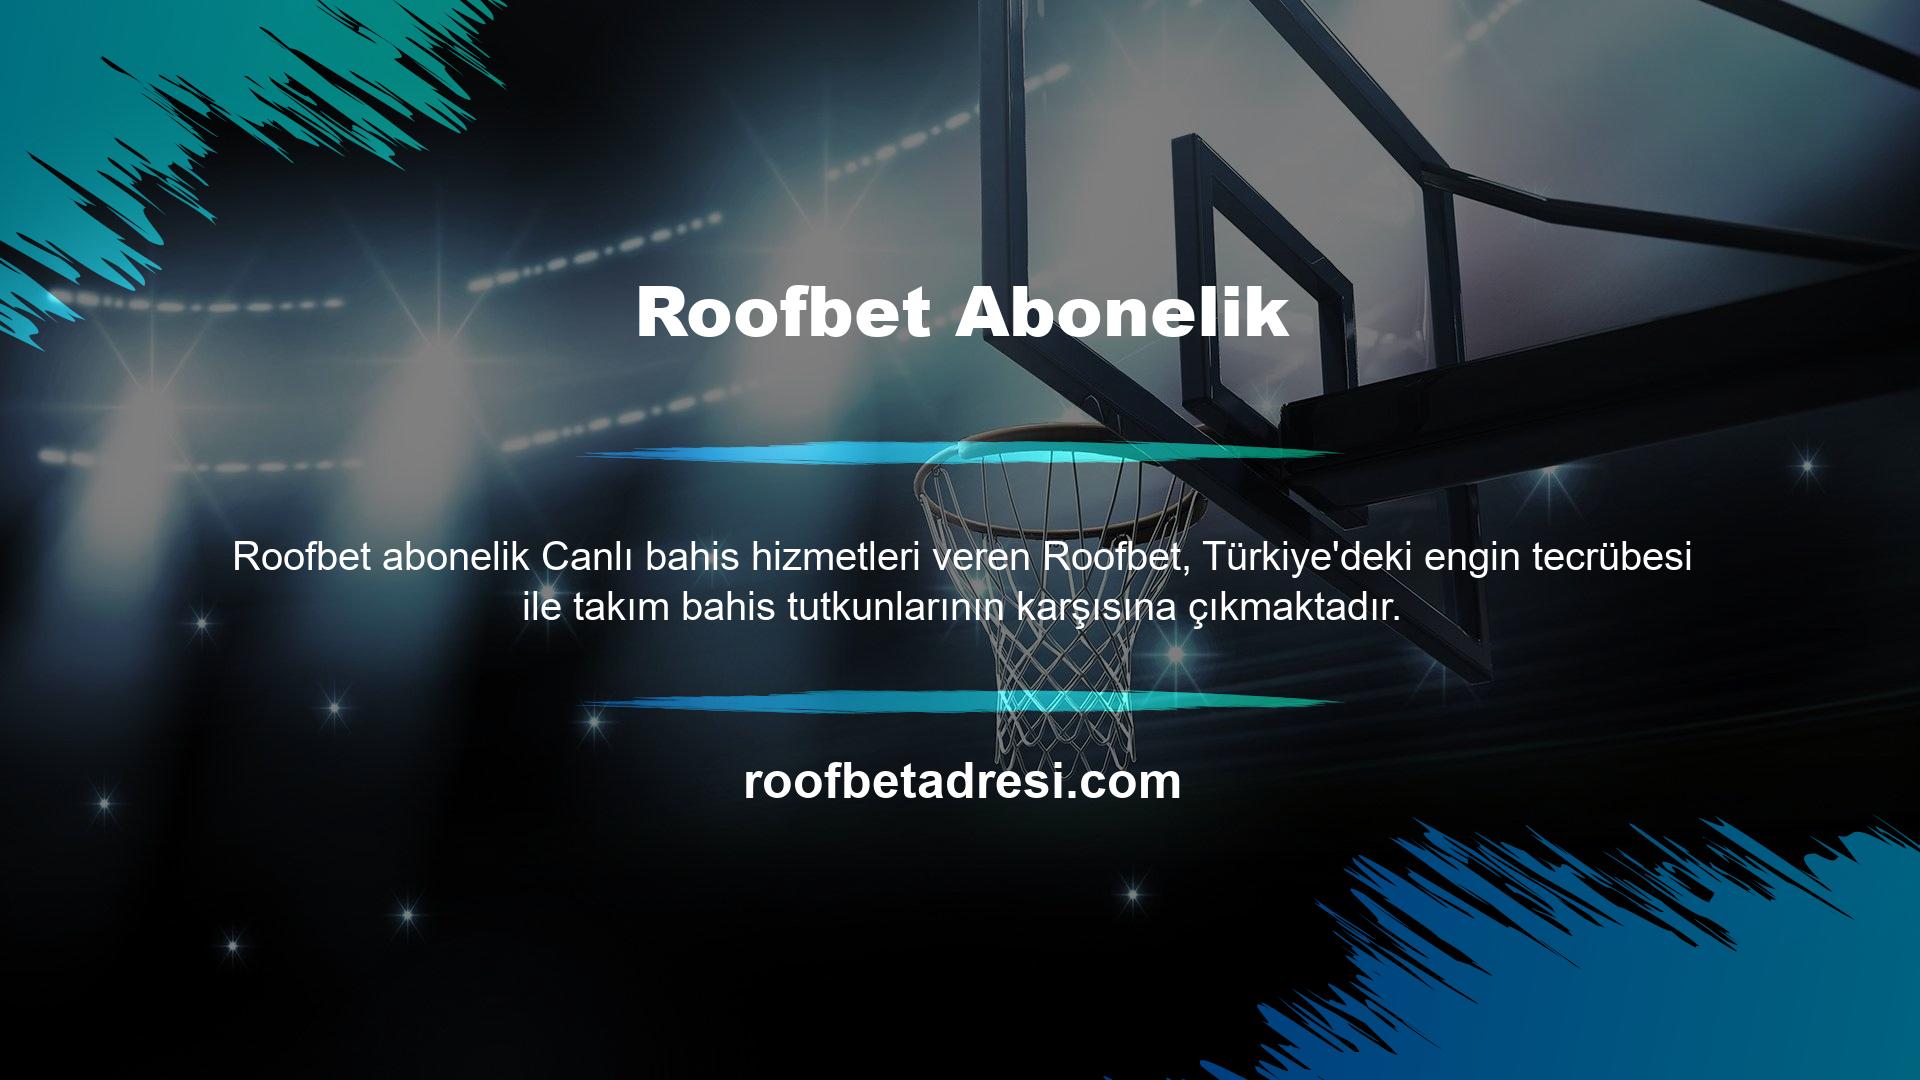 Canlı bahis sitesi Roofbet, deneyimli kadrosuna 7/24 canlı destek hattı da eklenince tercihini artıracaktır